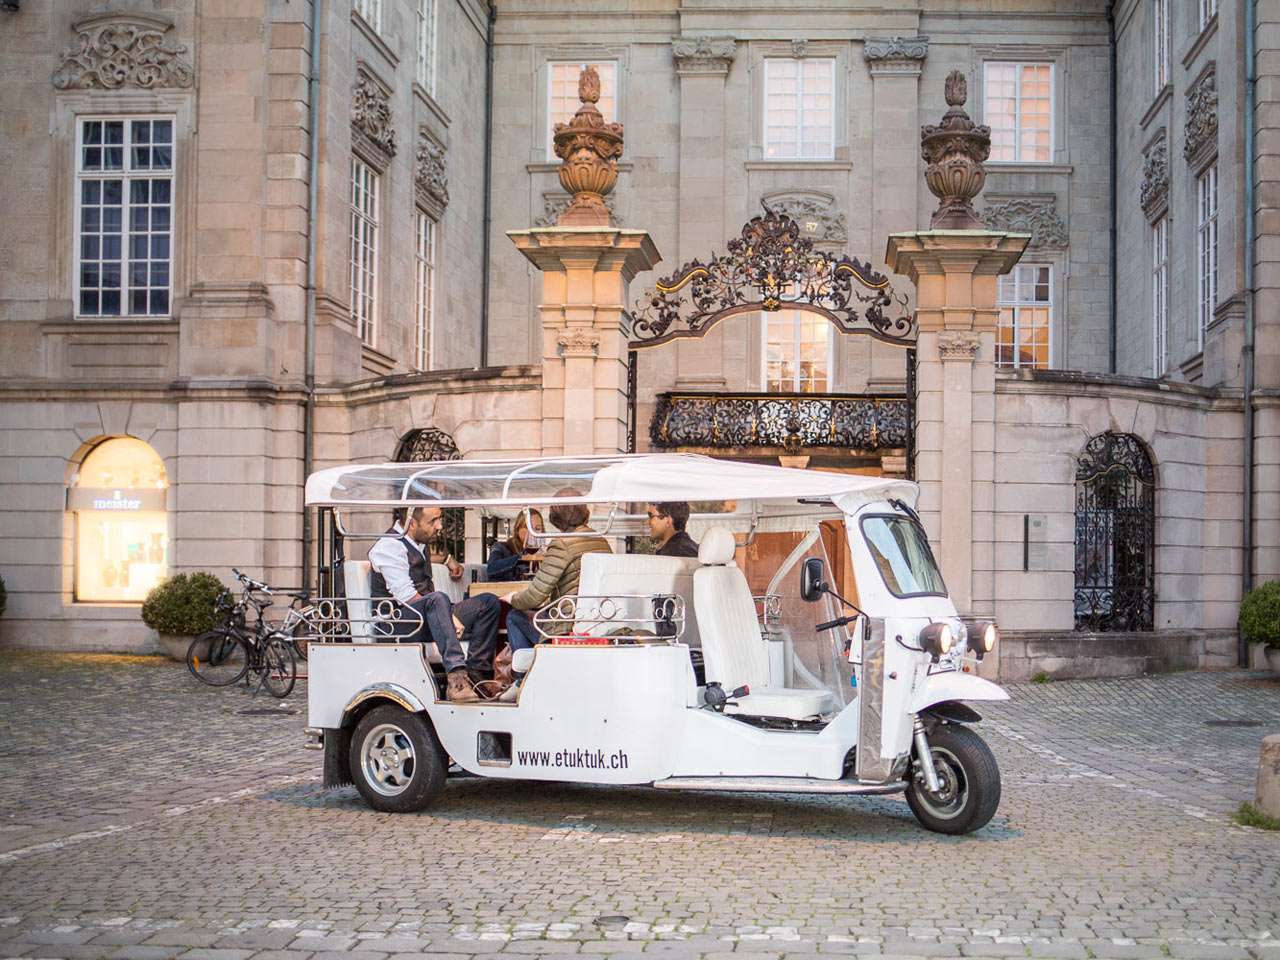 Tuktuk Zurique puzzle online a partir de fotografia